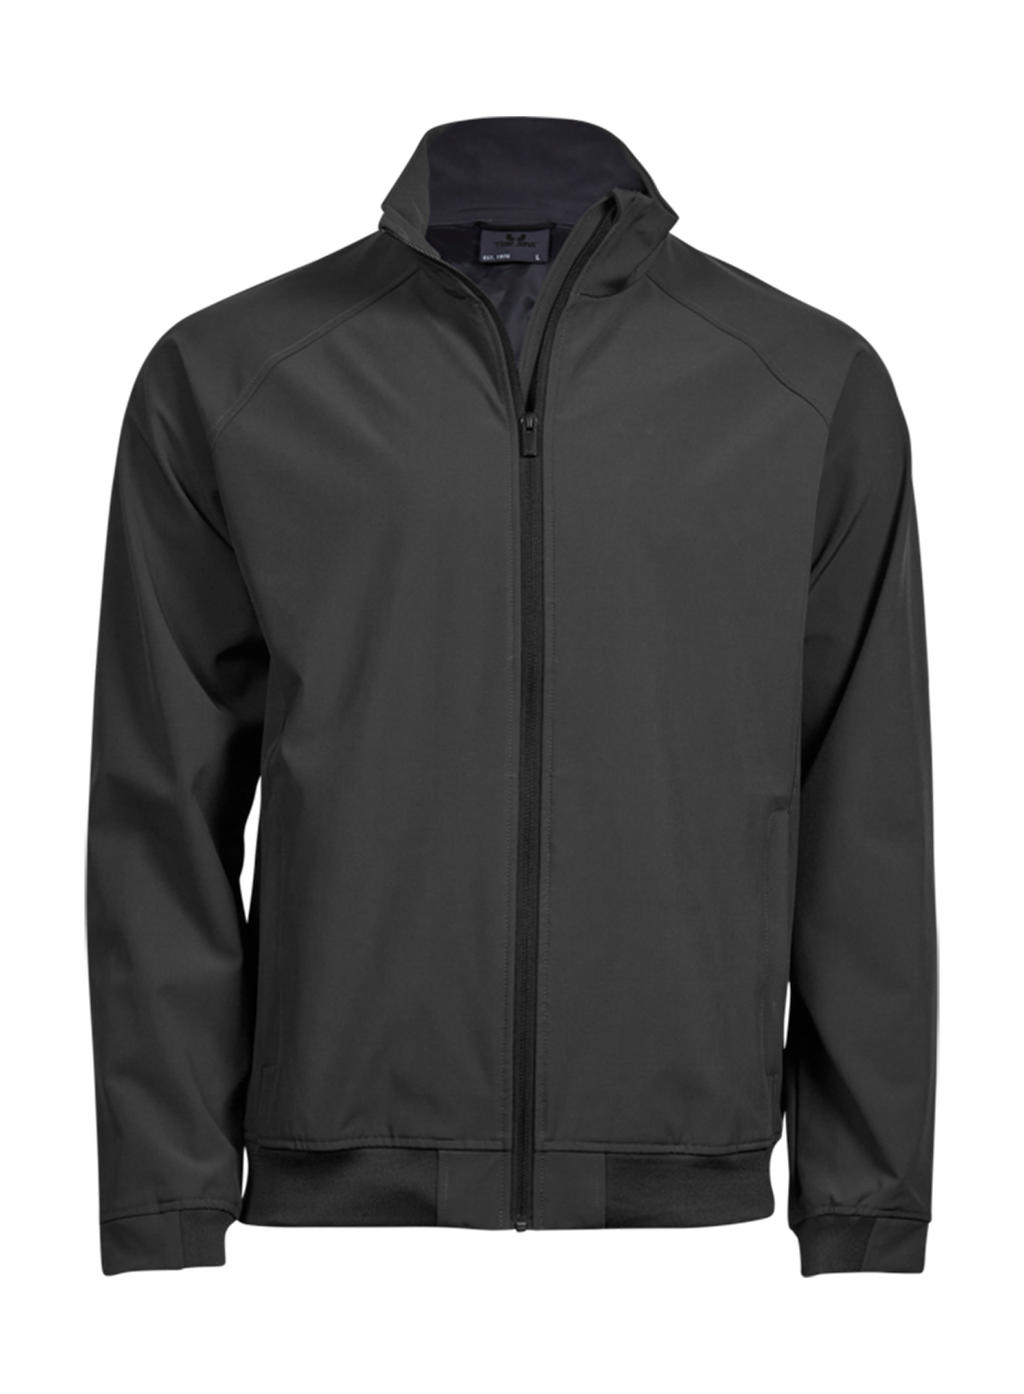  Club Jacket in Farbe Dark Grey